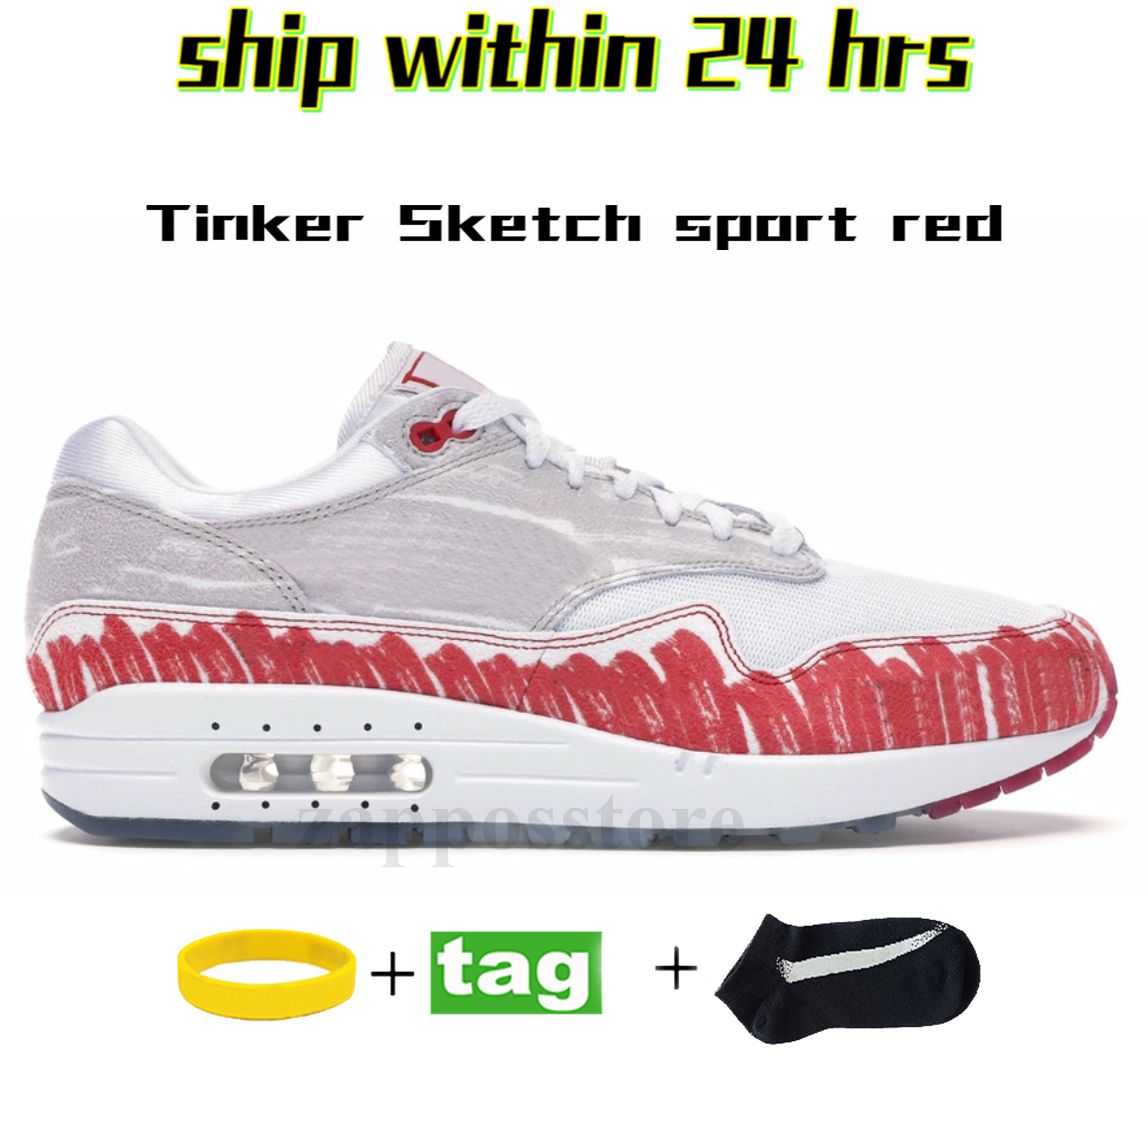 34 40-45 Tinker Sketch sport rouge